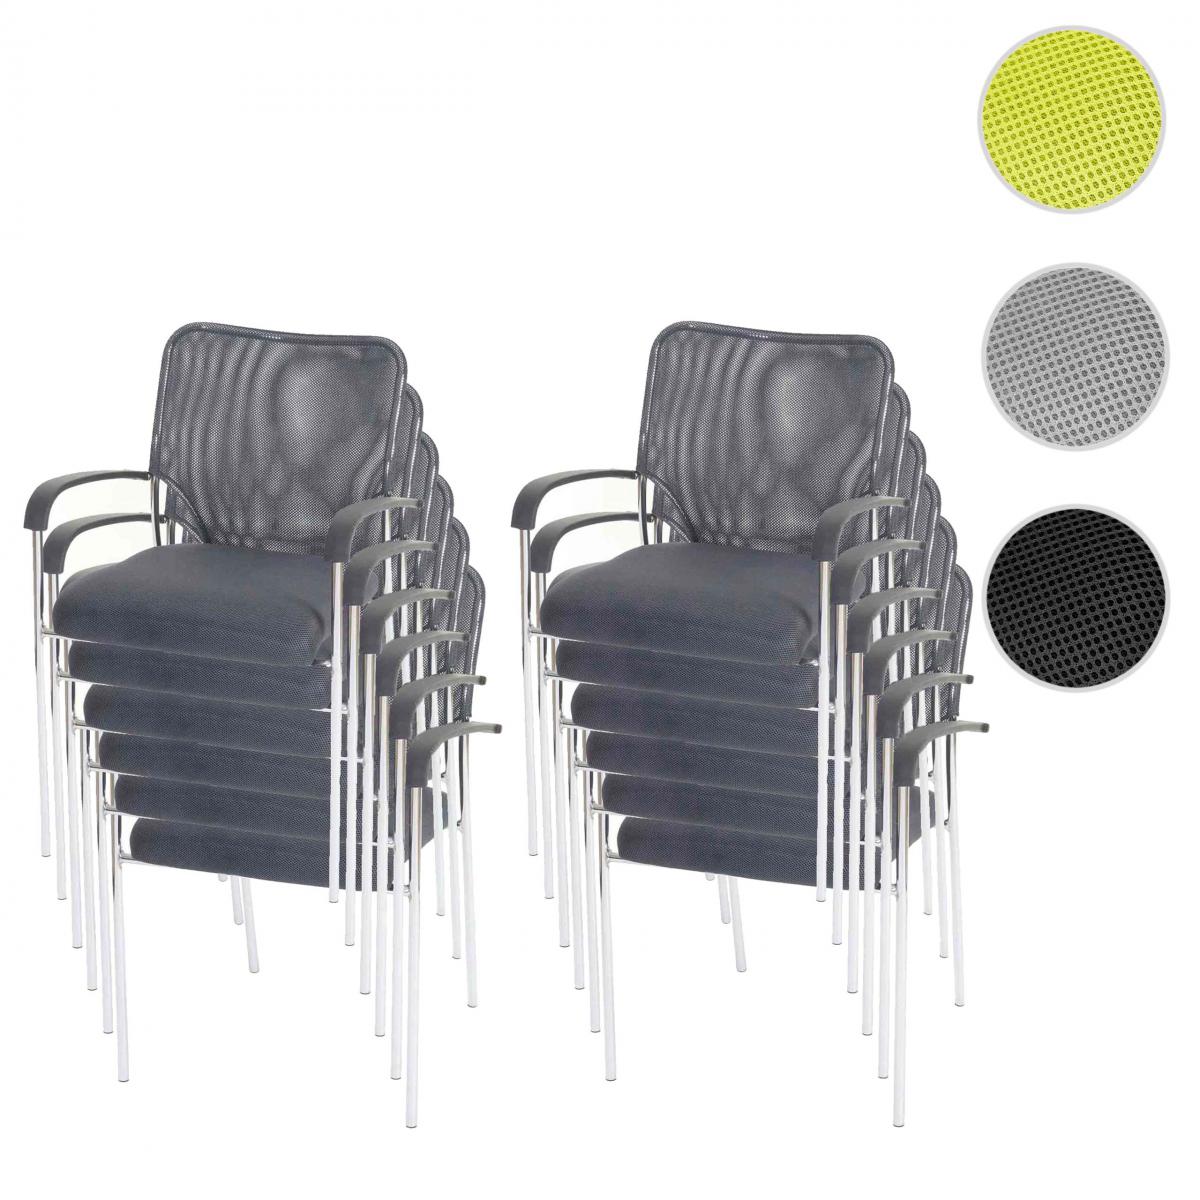 Mendler - Lot de 12 chaises de conférence / visiteur Tulsa, empilable, tissu – siège gris, dossier gris - Chaises